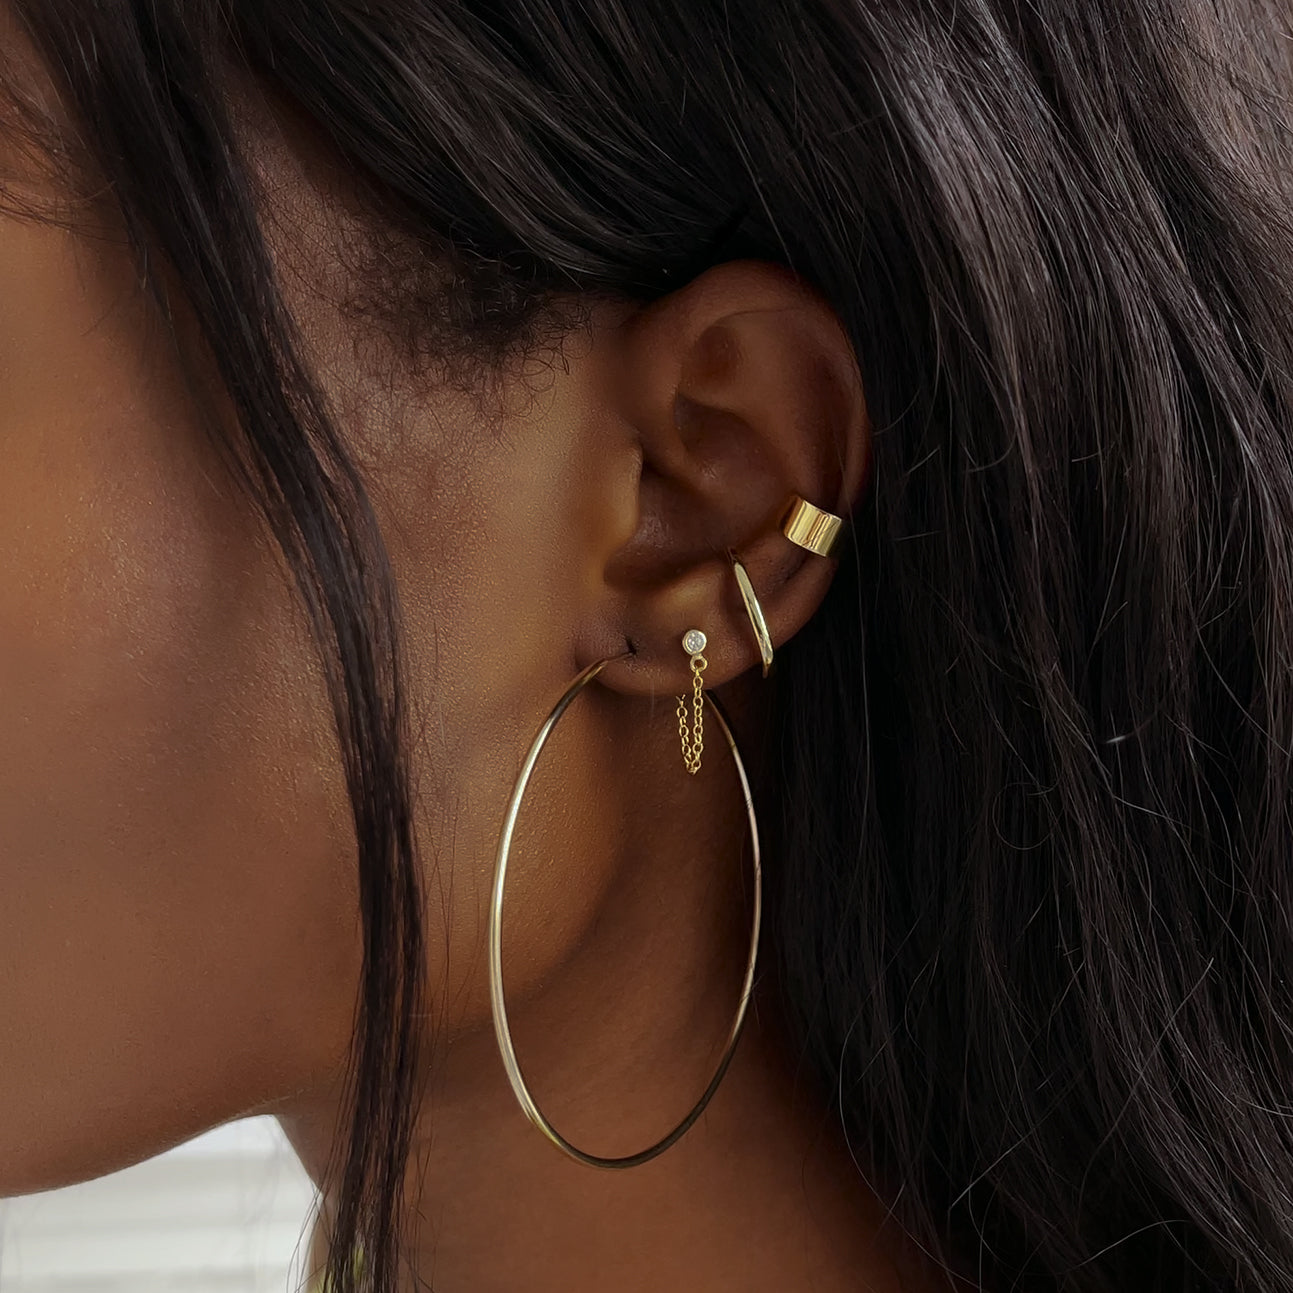 ear cuff earrings